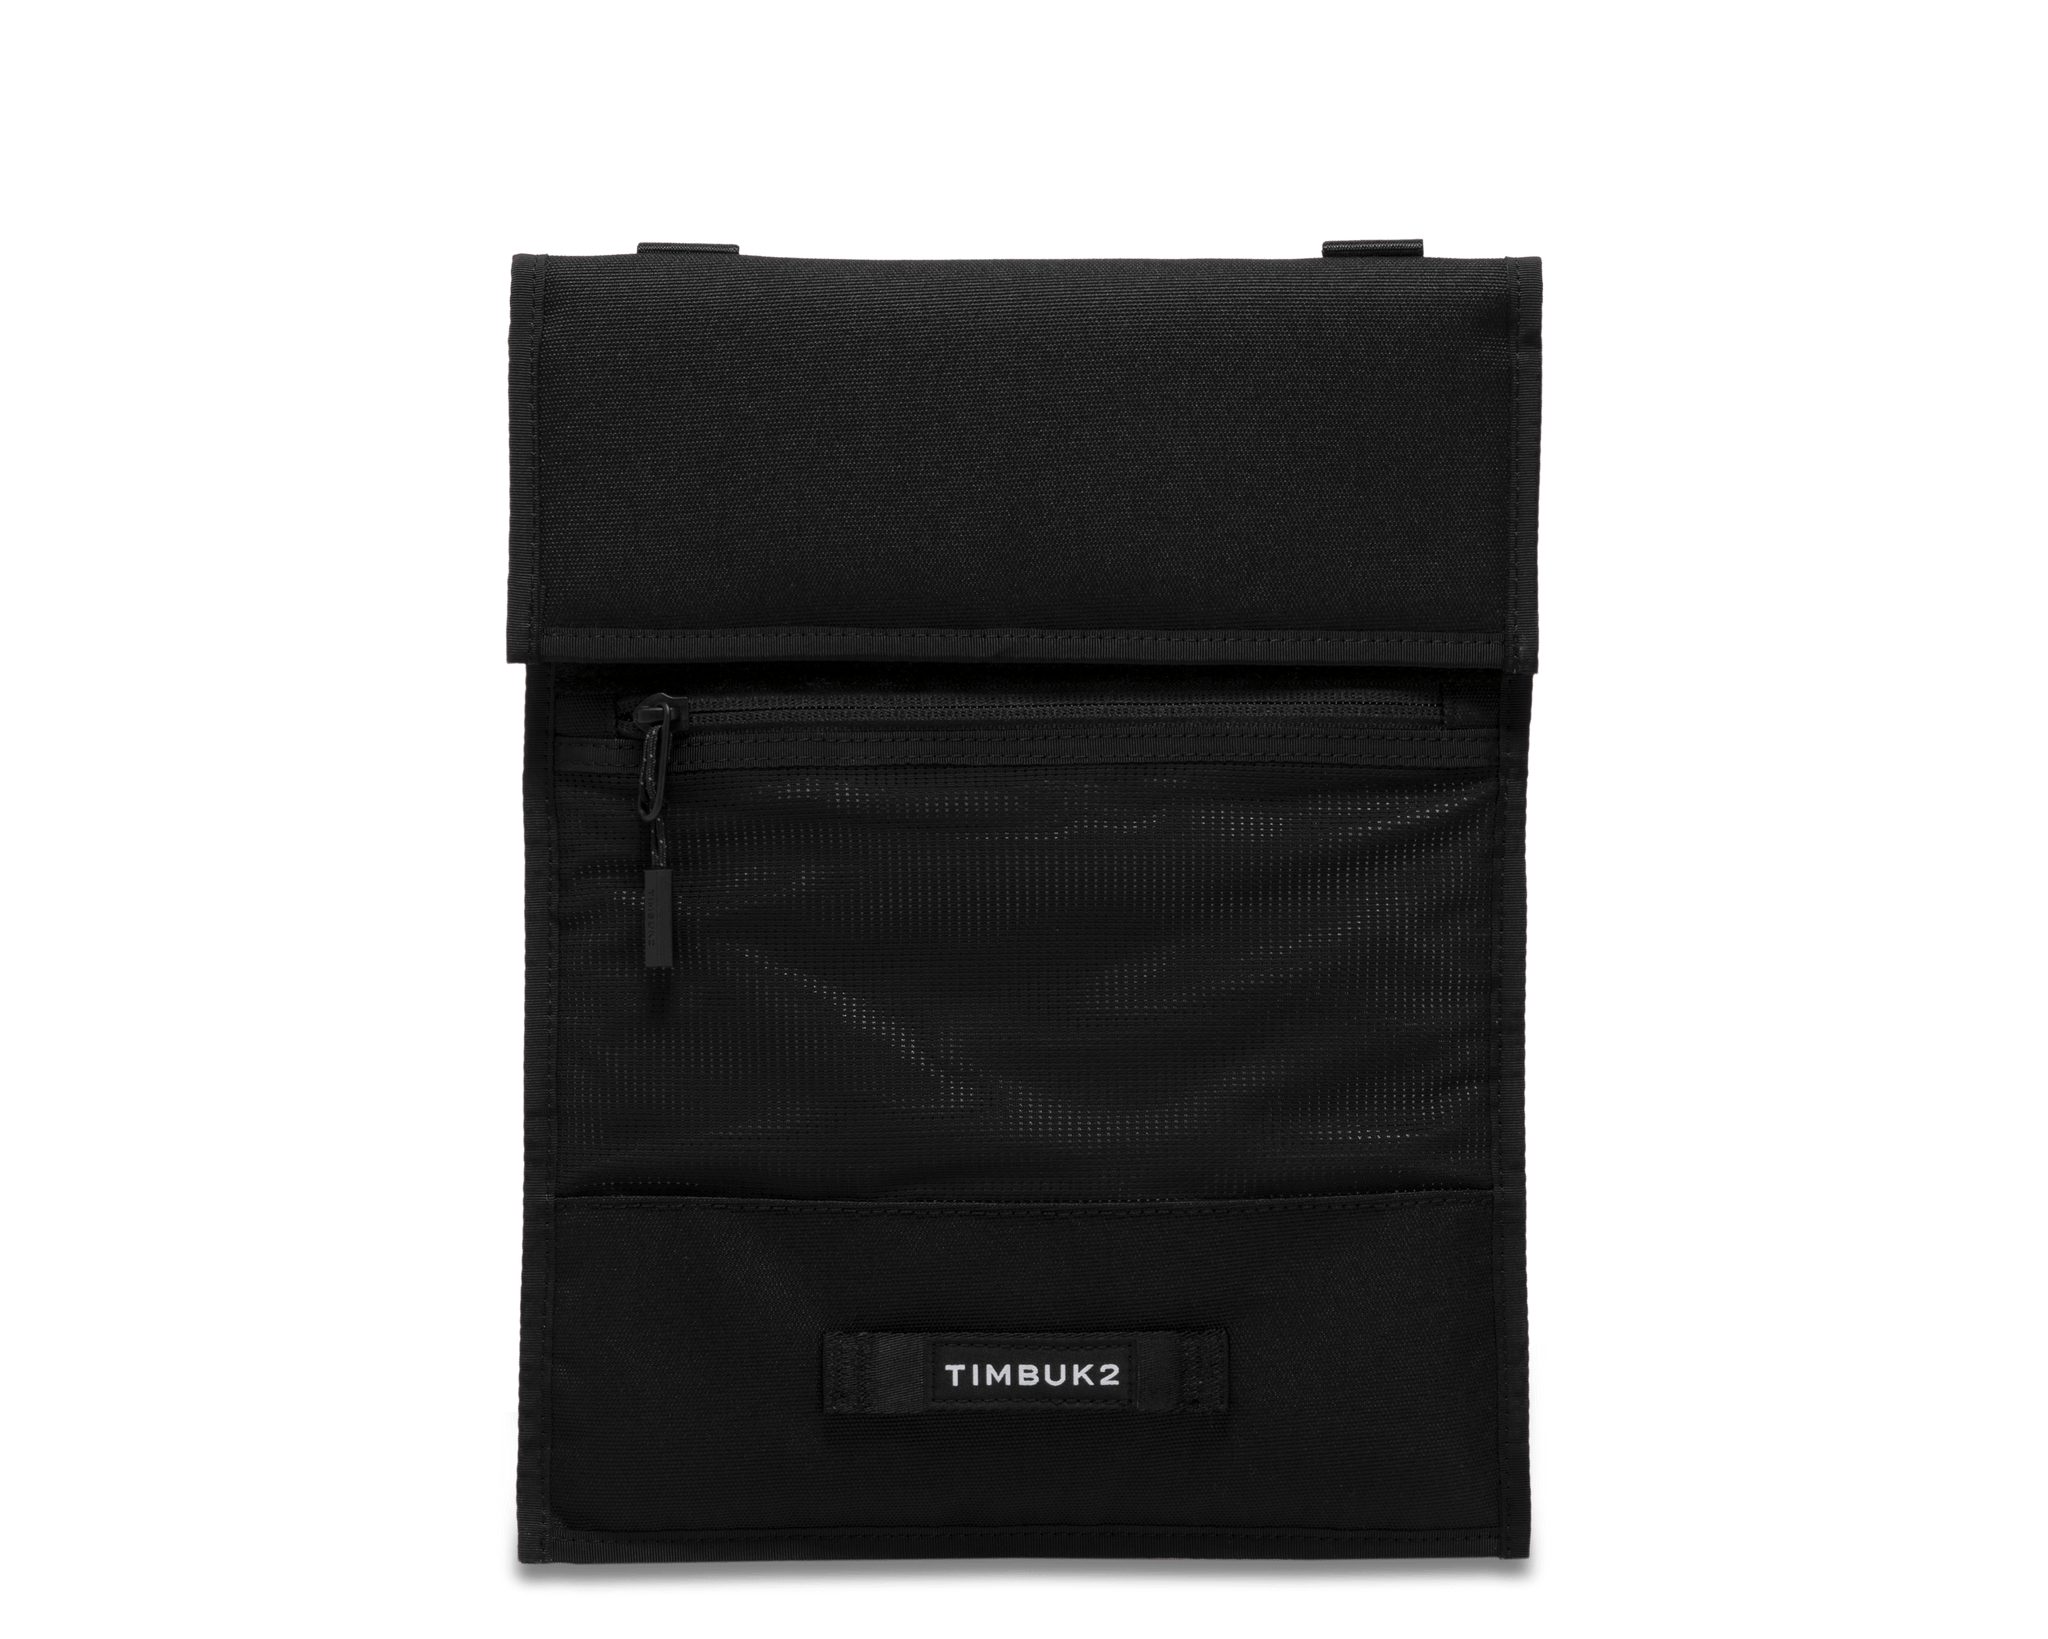 Timbuk2 Bags One Size / Eco Black Timbuk2 - Utility Laptop Sleeve 13"